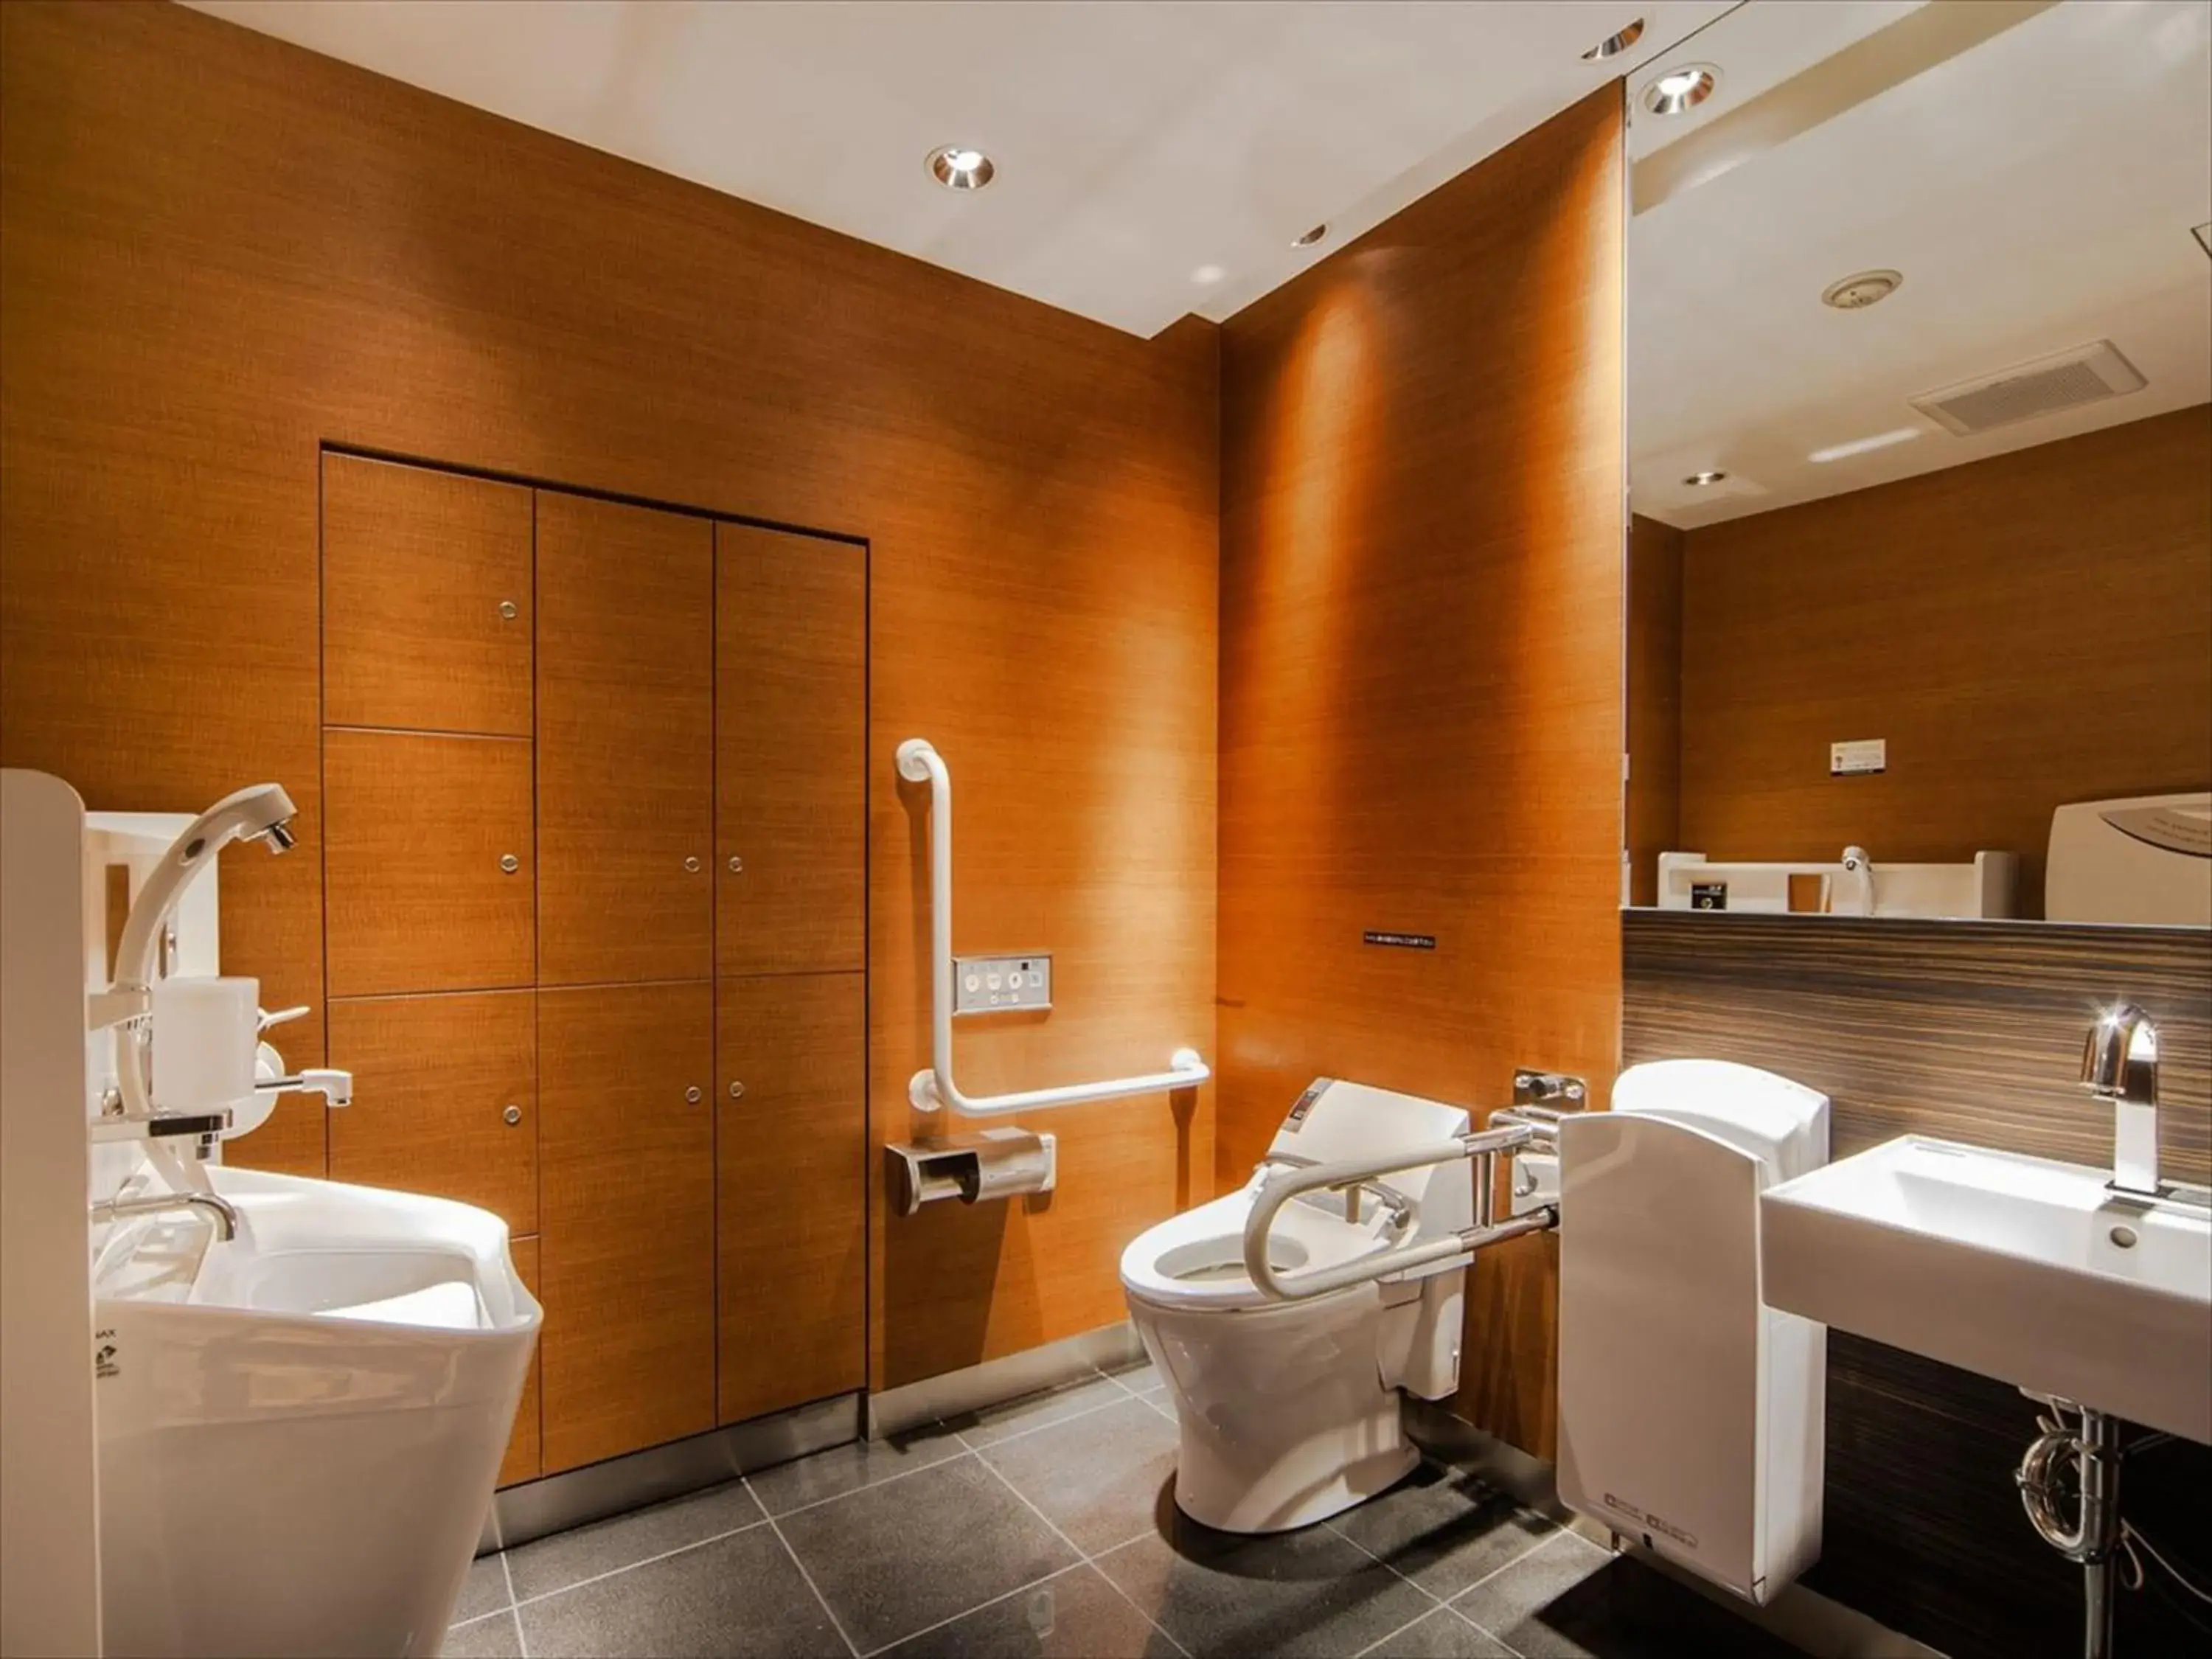 Area and facilities, Bathroom in Apa Hotel Mita-Ekimae